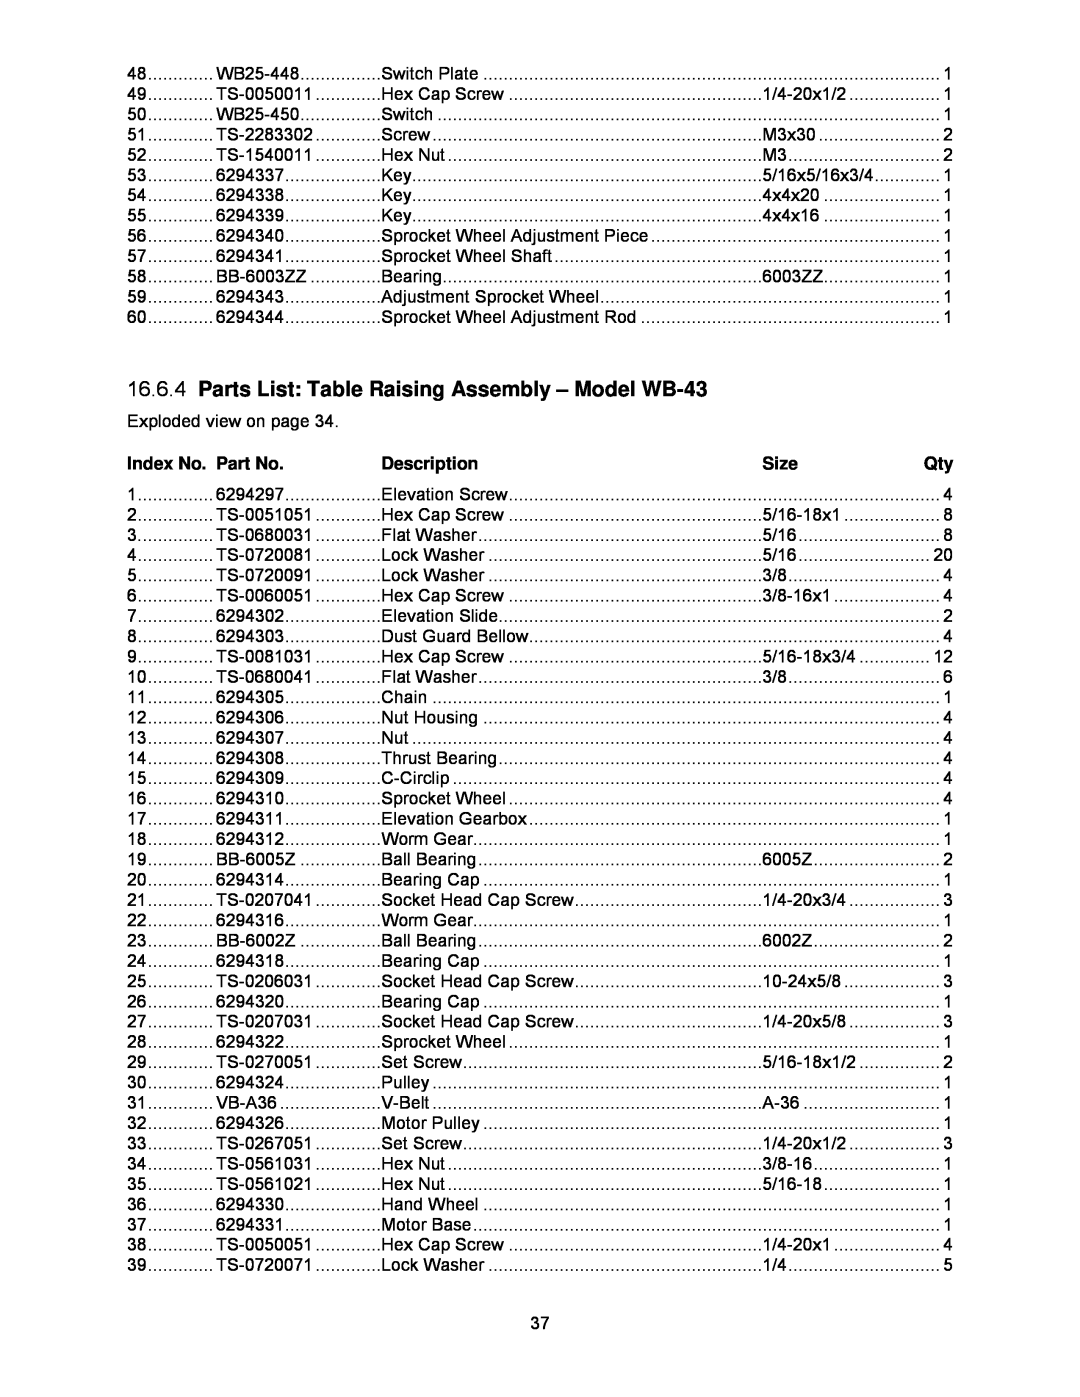 Powermatic WB-25, WB-37 Parts List Table Raising Assembly - Model WB-43, Index No. Part No, Description, Size 